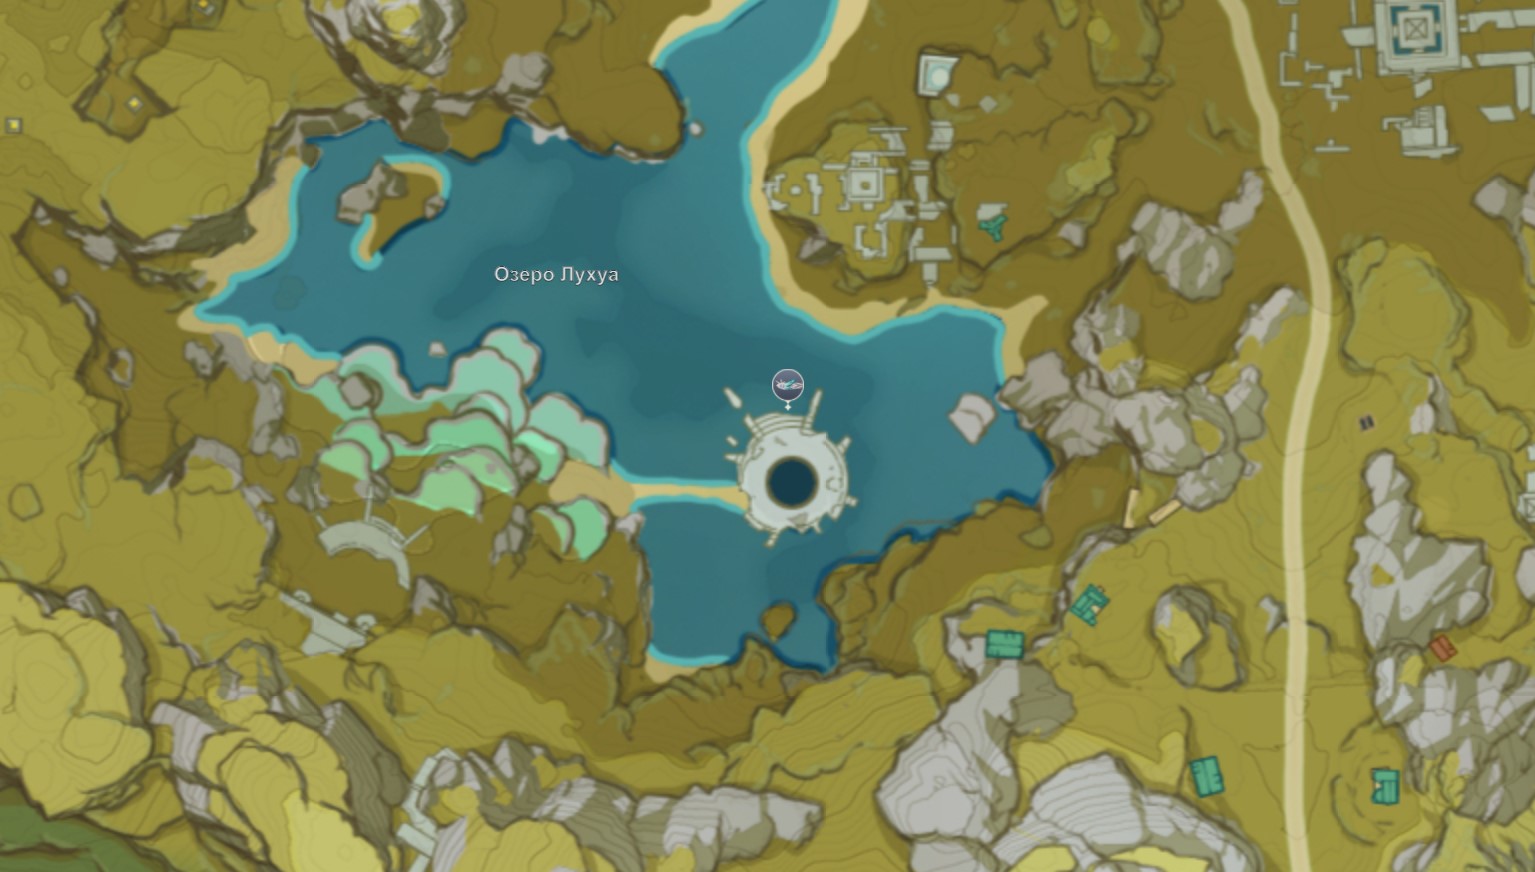 Озеро лухуа загадка